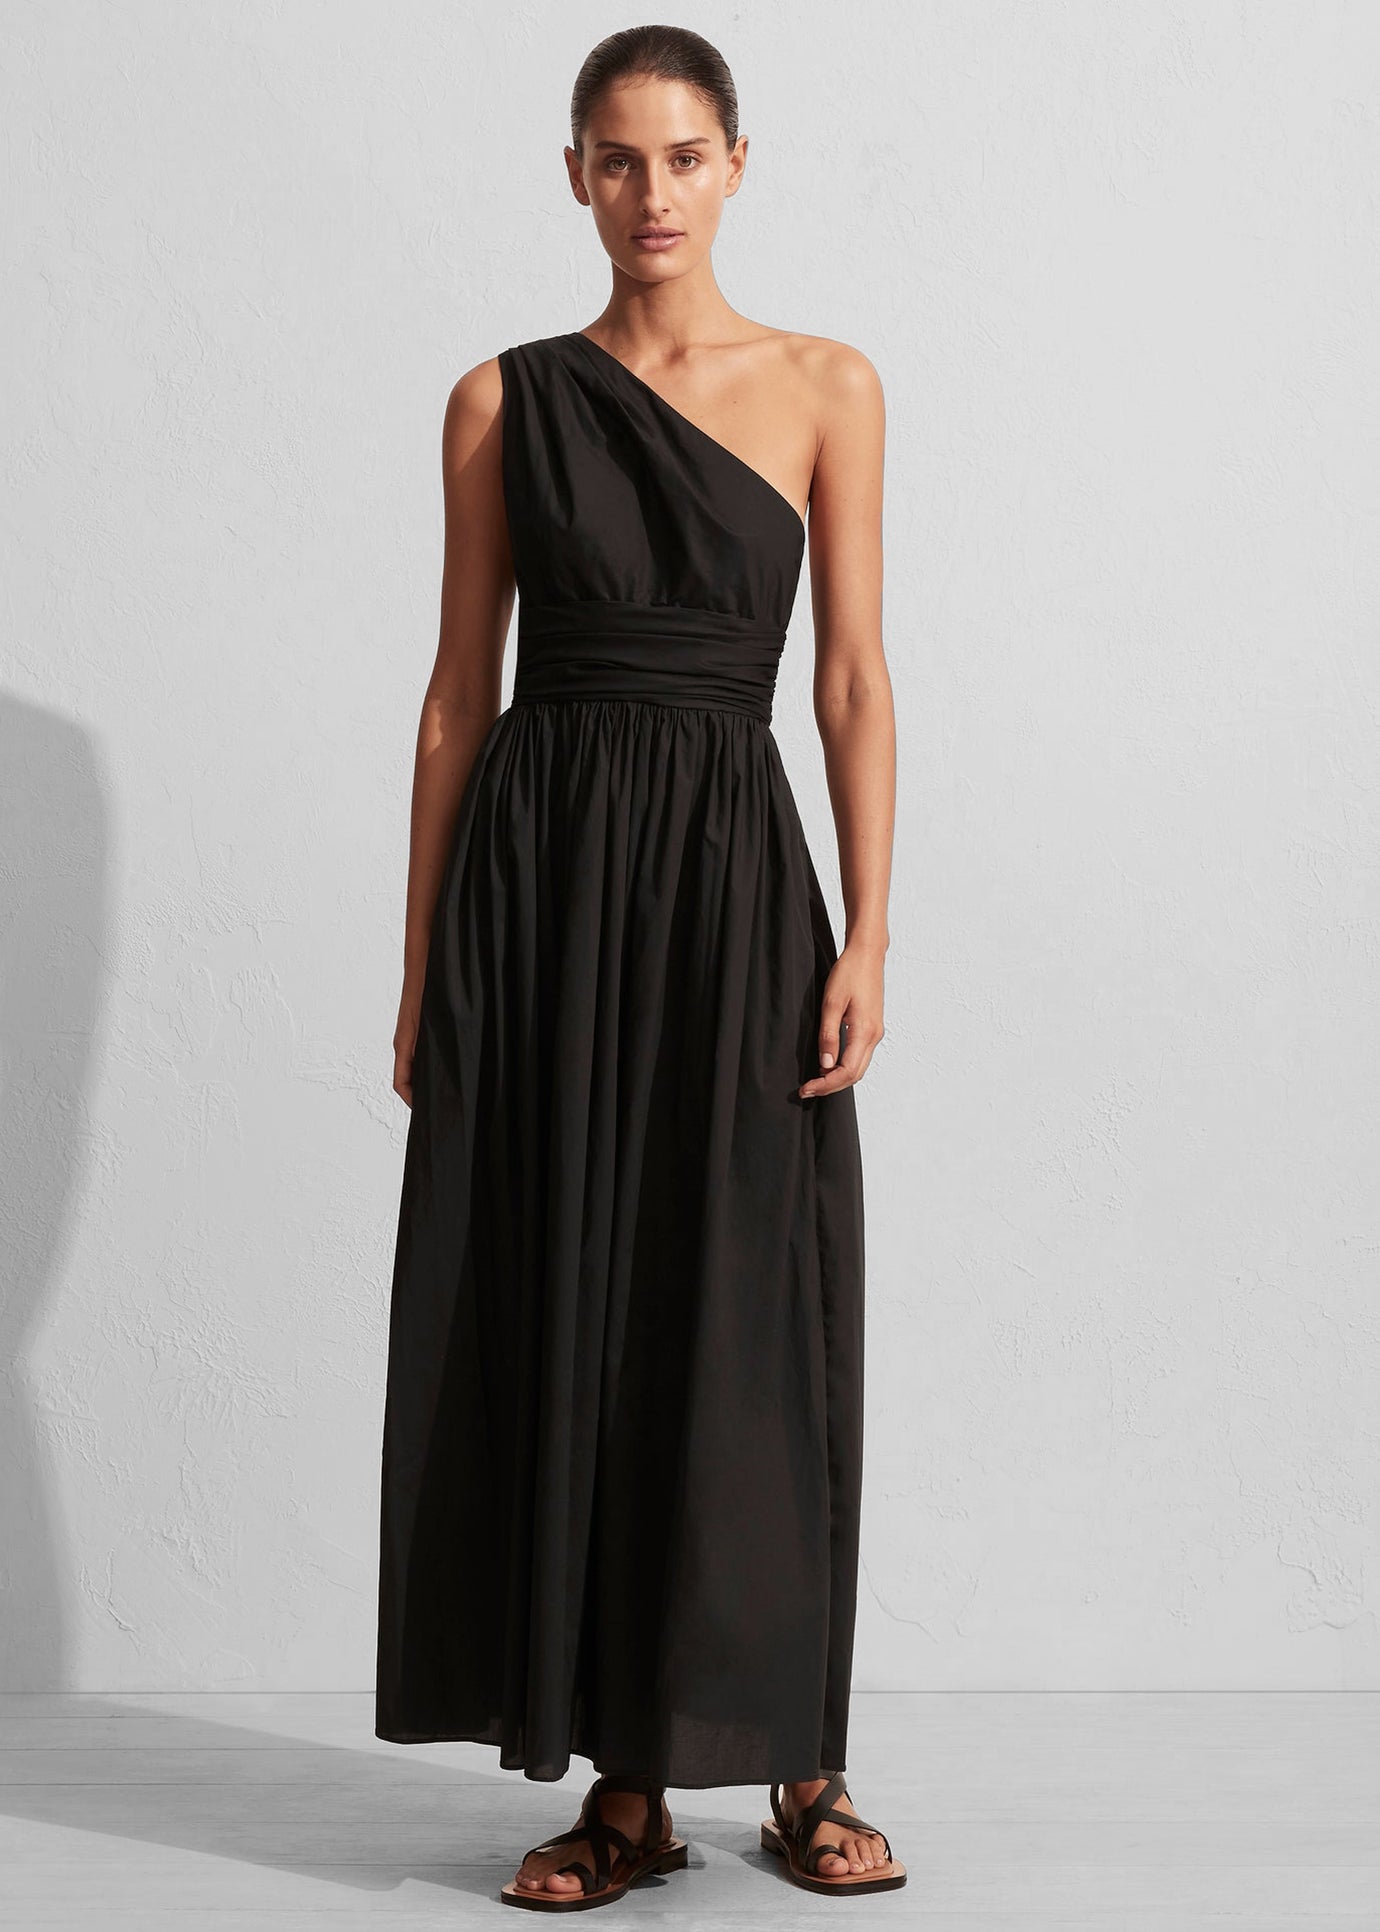 Matteau Gathered One Shoulder Dress - Black